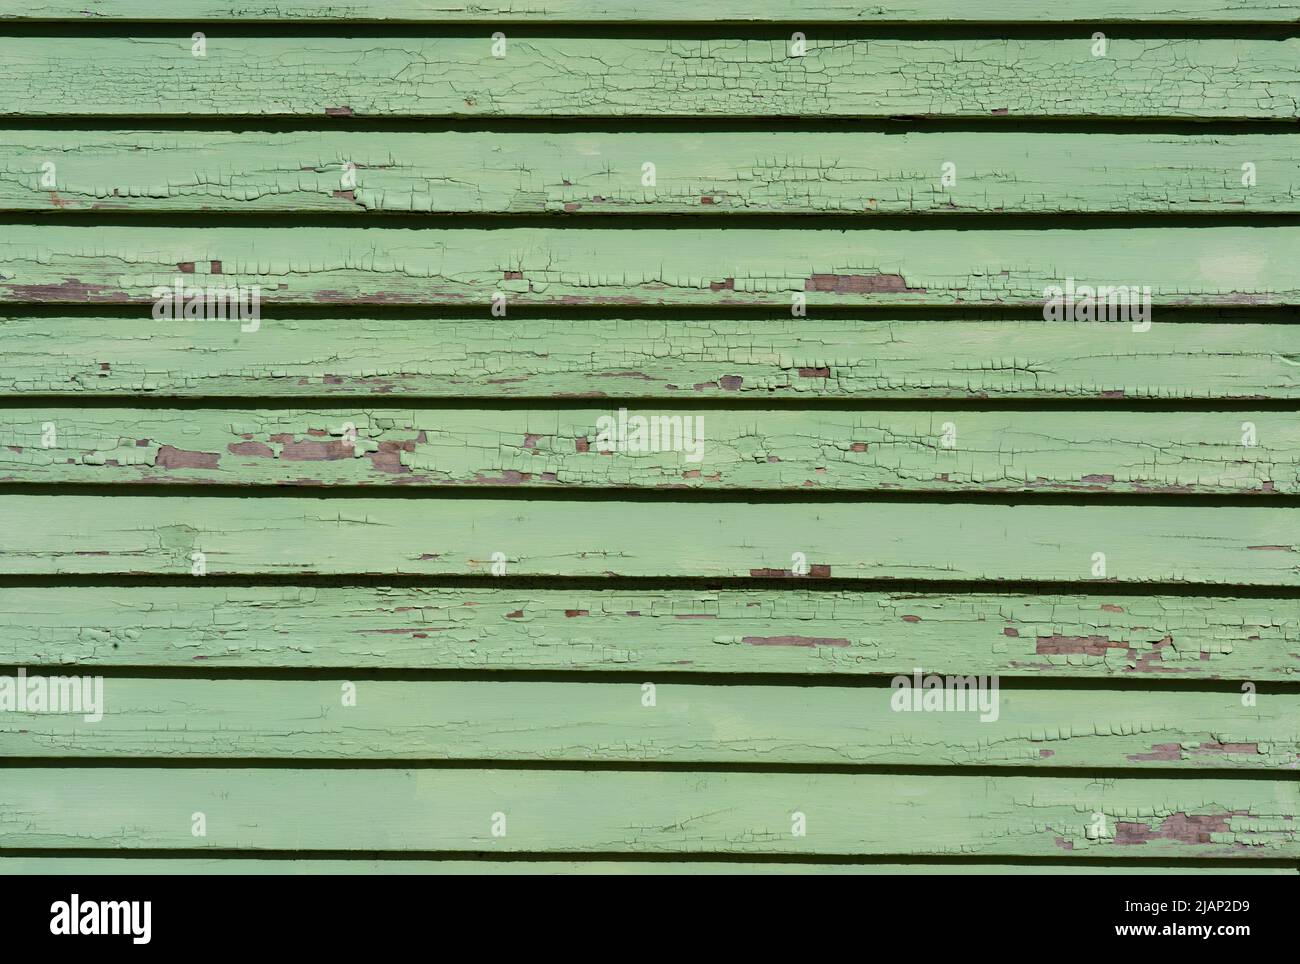 Sehen Sie sich die grüne Farbe an, die sich von der Holzseitenverkleidung abblättert. Dies ist eine Nahaufnahme, die das Abplatzen auf den alten, wettergewitterten Holzbrettern zeigt. Stockfoto